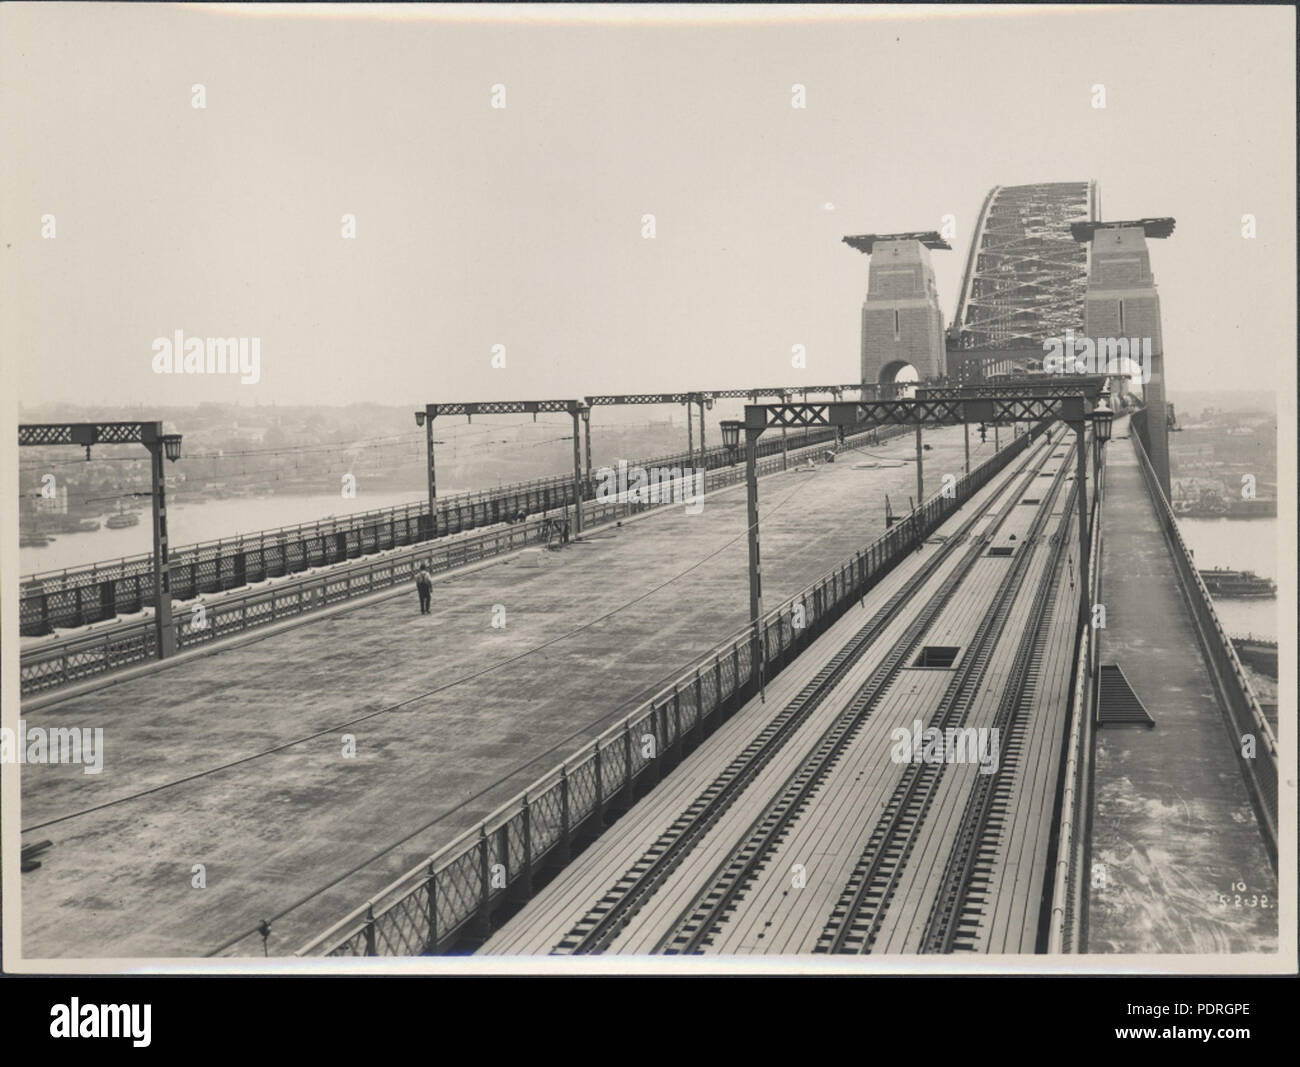 87/1353-155tirage photographique, les voies ferrées sur le Harbour Bridge, l'argent / gélatine / papier, photographie de la Nouvelle Galles du sud Ministère des Travaux publics, Sydney, Australie, février 1932, 315 voies de train sur le Harbour Bridge, 1932 (8282716303) Banque D'Images